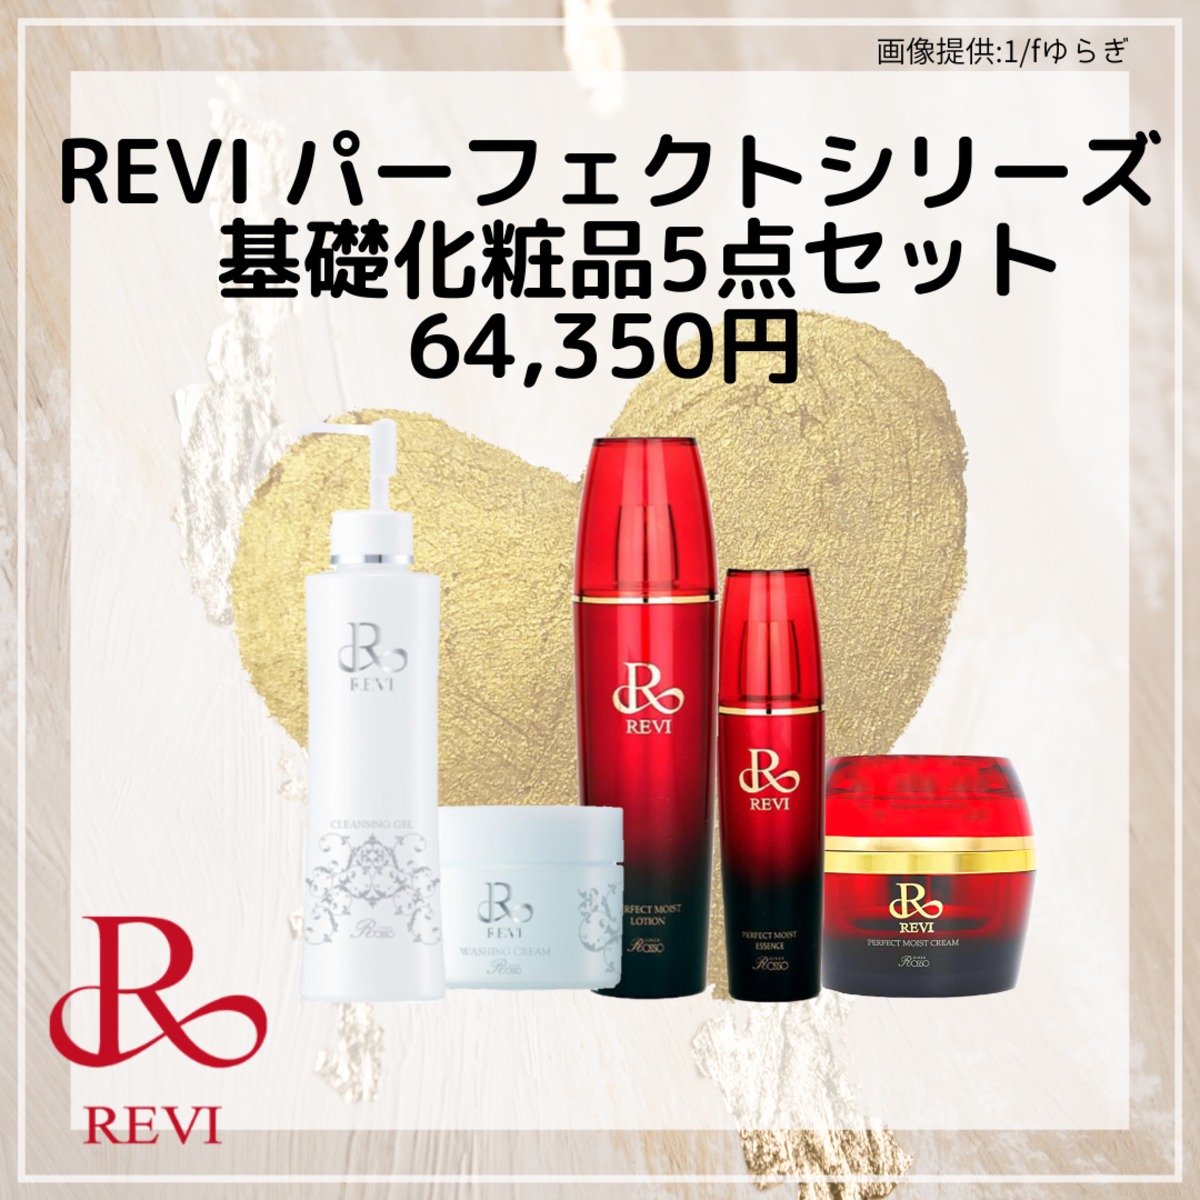 【送料無料】REVI基礎化粧品【ホームケア5点セット】プレゼント付き